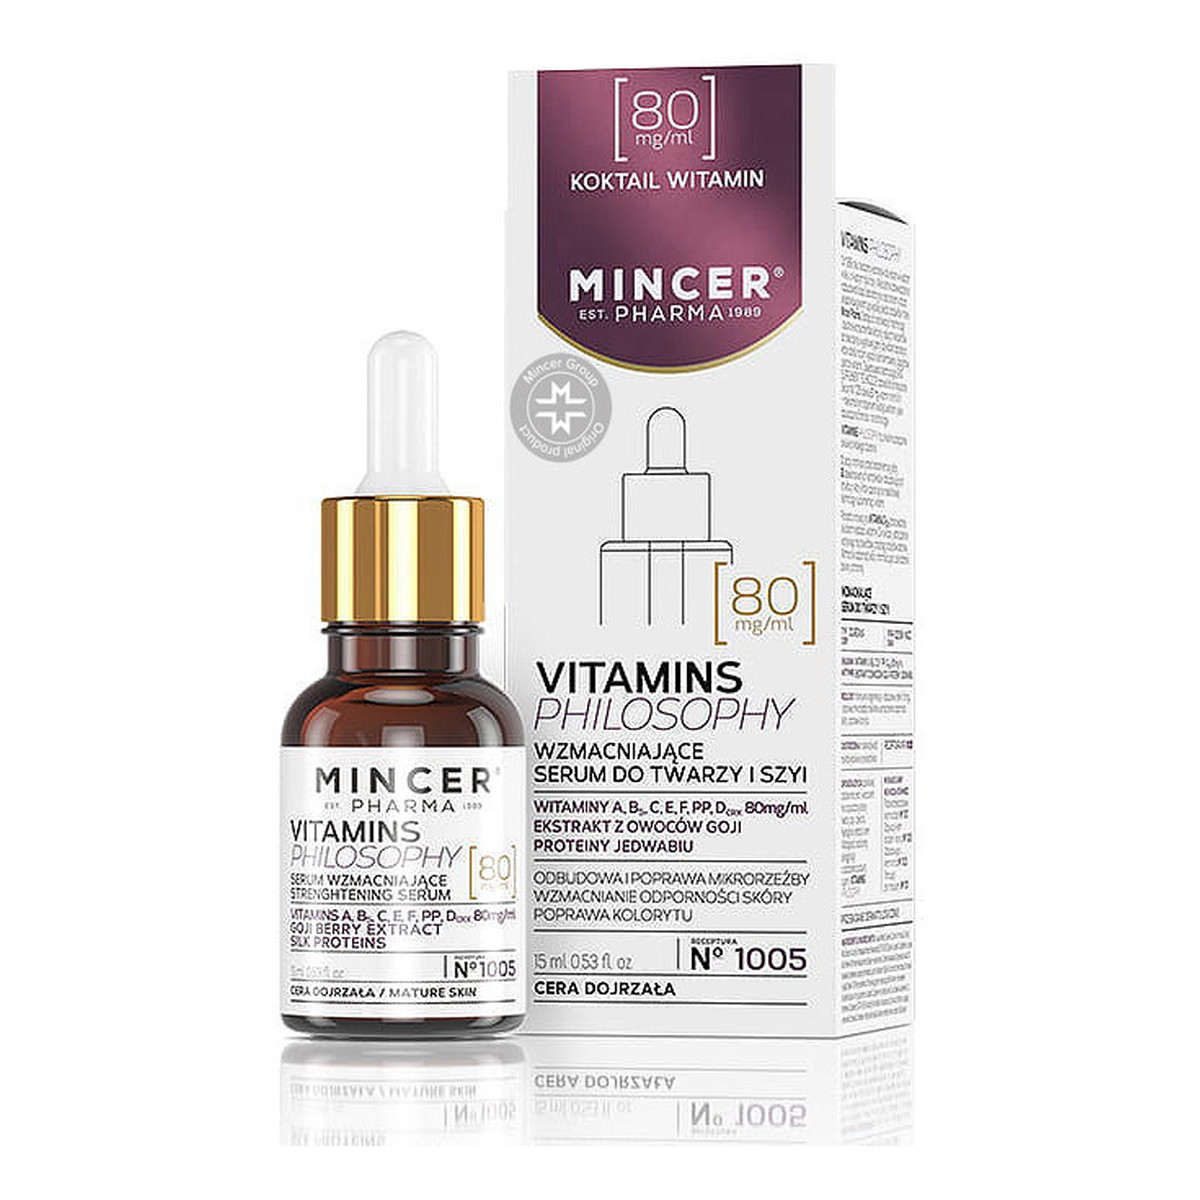 Mincer Pharma Vitamins Philosophy Serum wzmacniające do twarzy i szyi No 1005 15ml